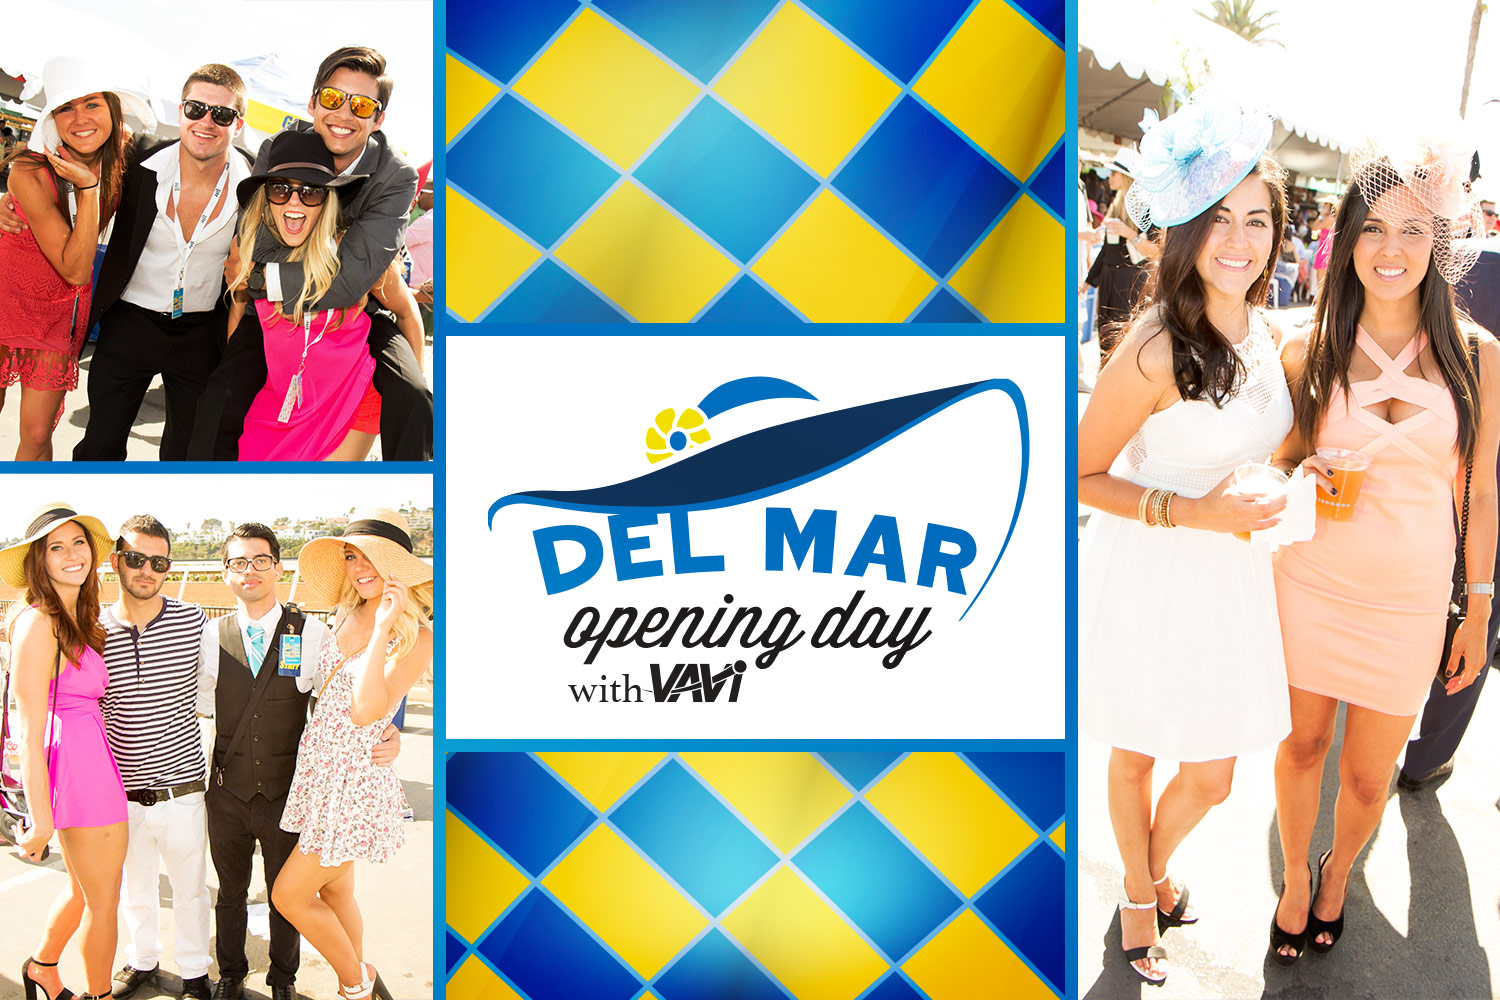 Opening Day Del Mar Vavi Discount Code 2019, Del Mar Racetrack, Del Mar Fairgrounds, Del Mar VIP Tickets, General Admission, Discount Passes